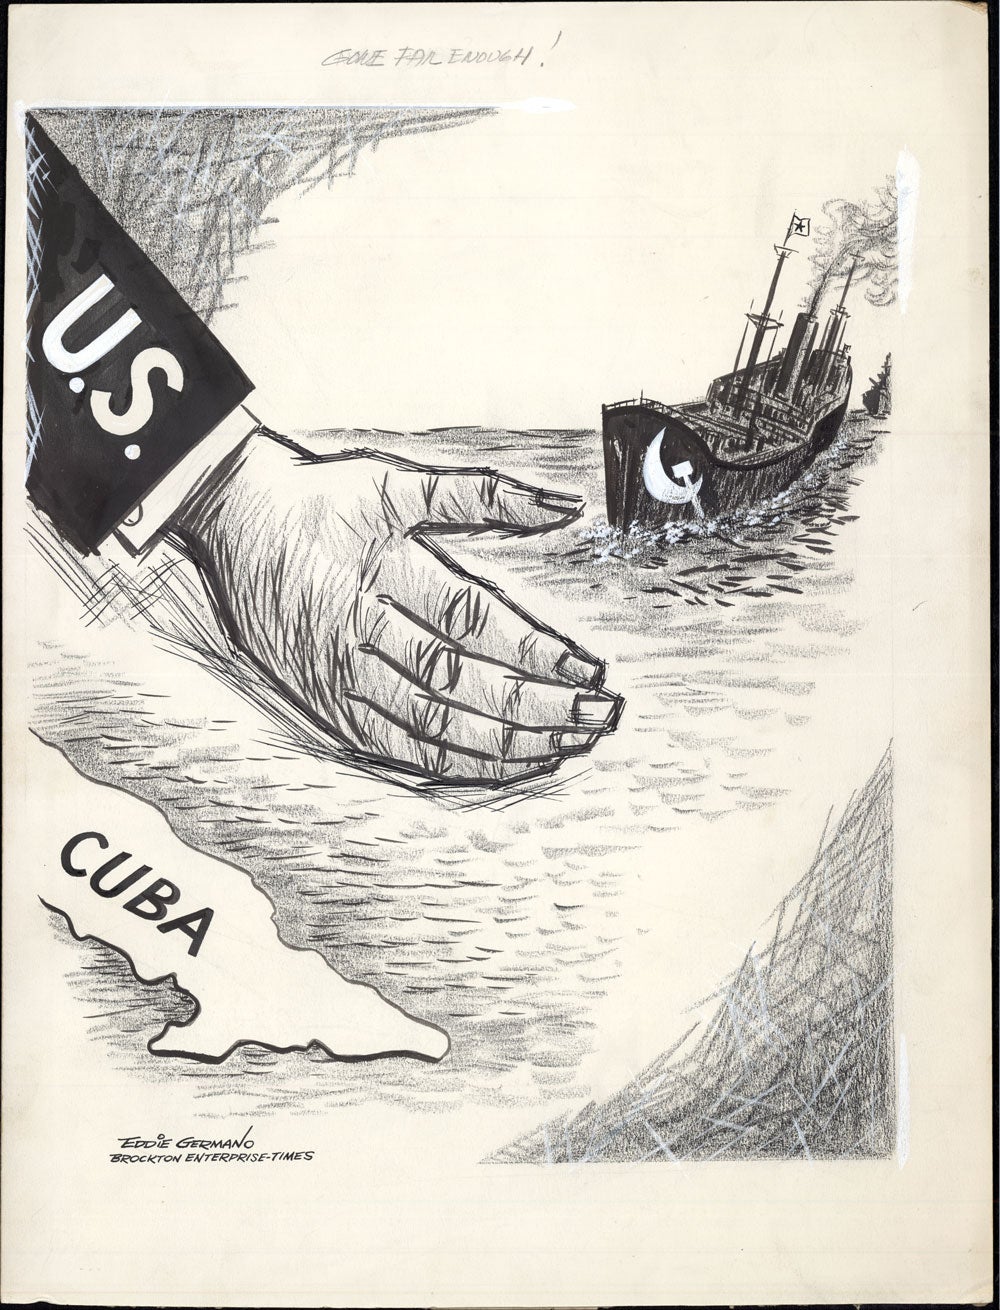 cuban missile crisis cartoon analysis